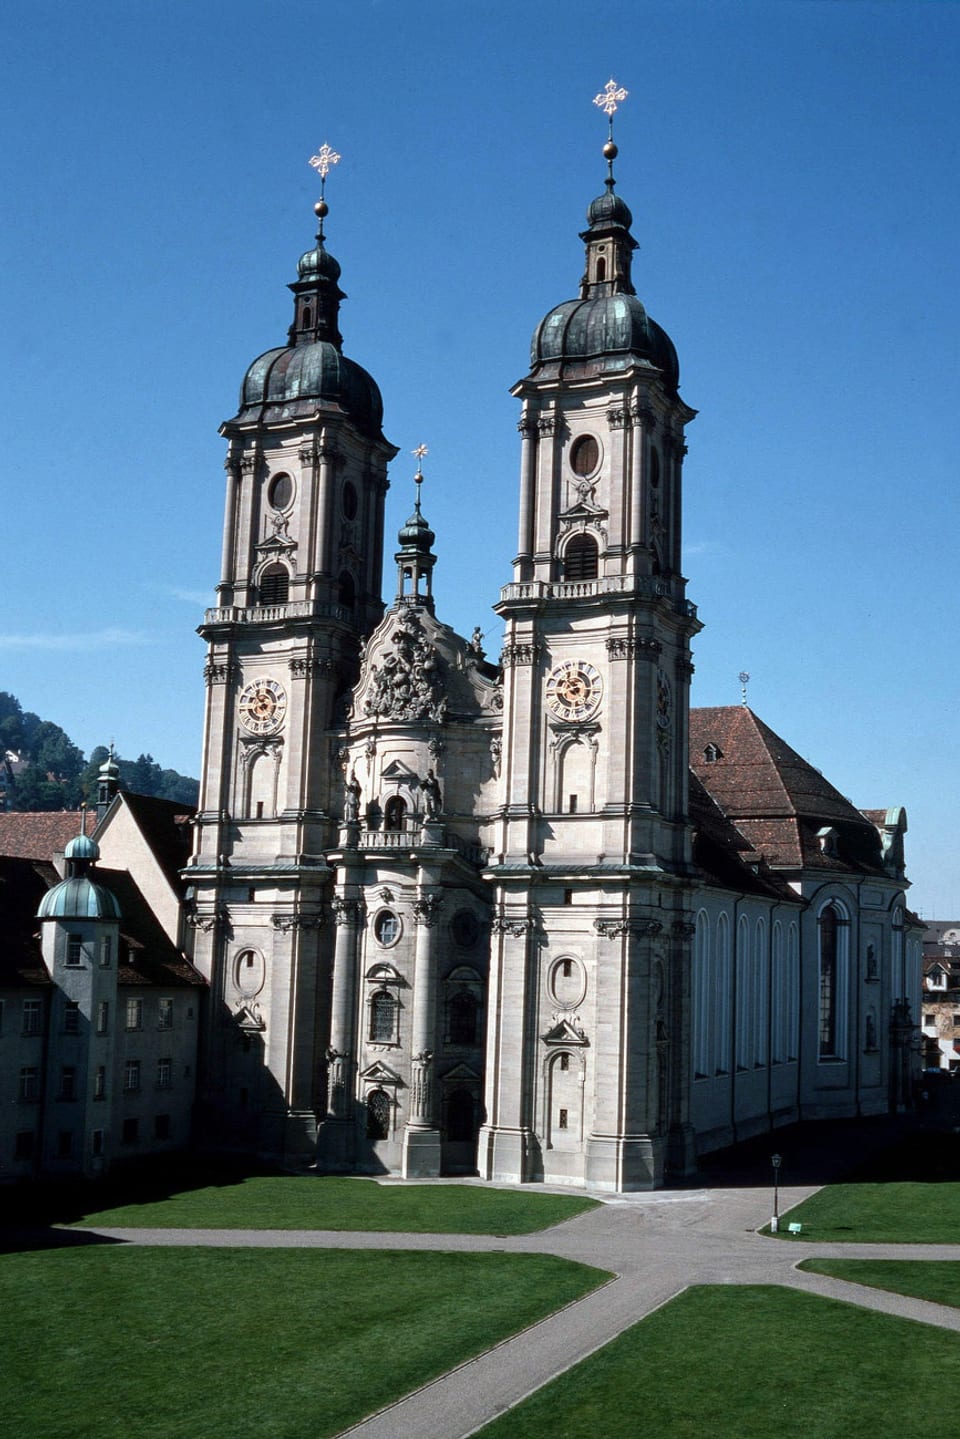 Blick auf die zwei Türme der Stiftskirche in St. Gallen.